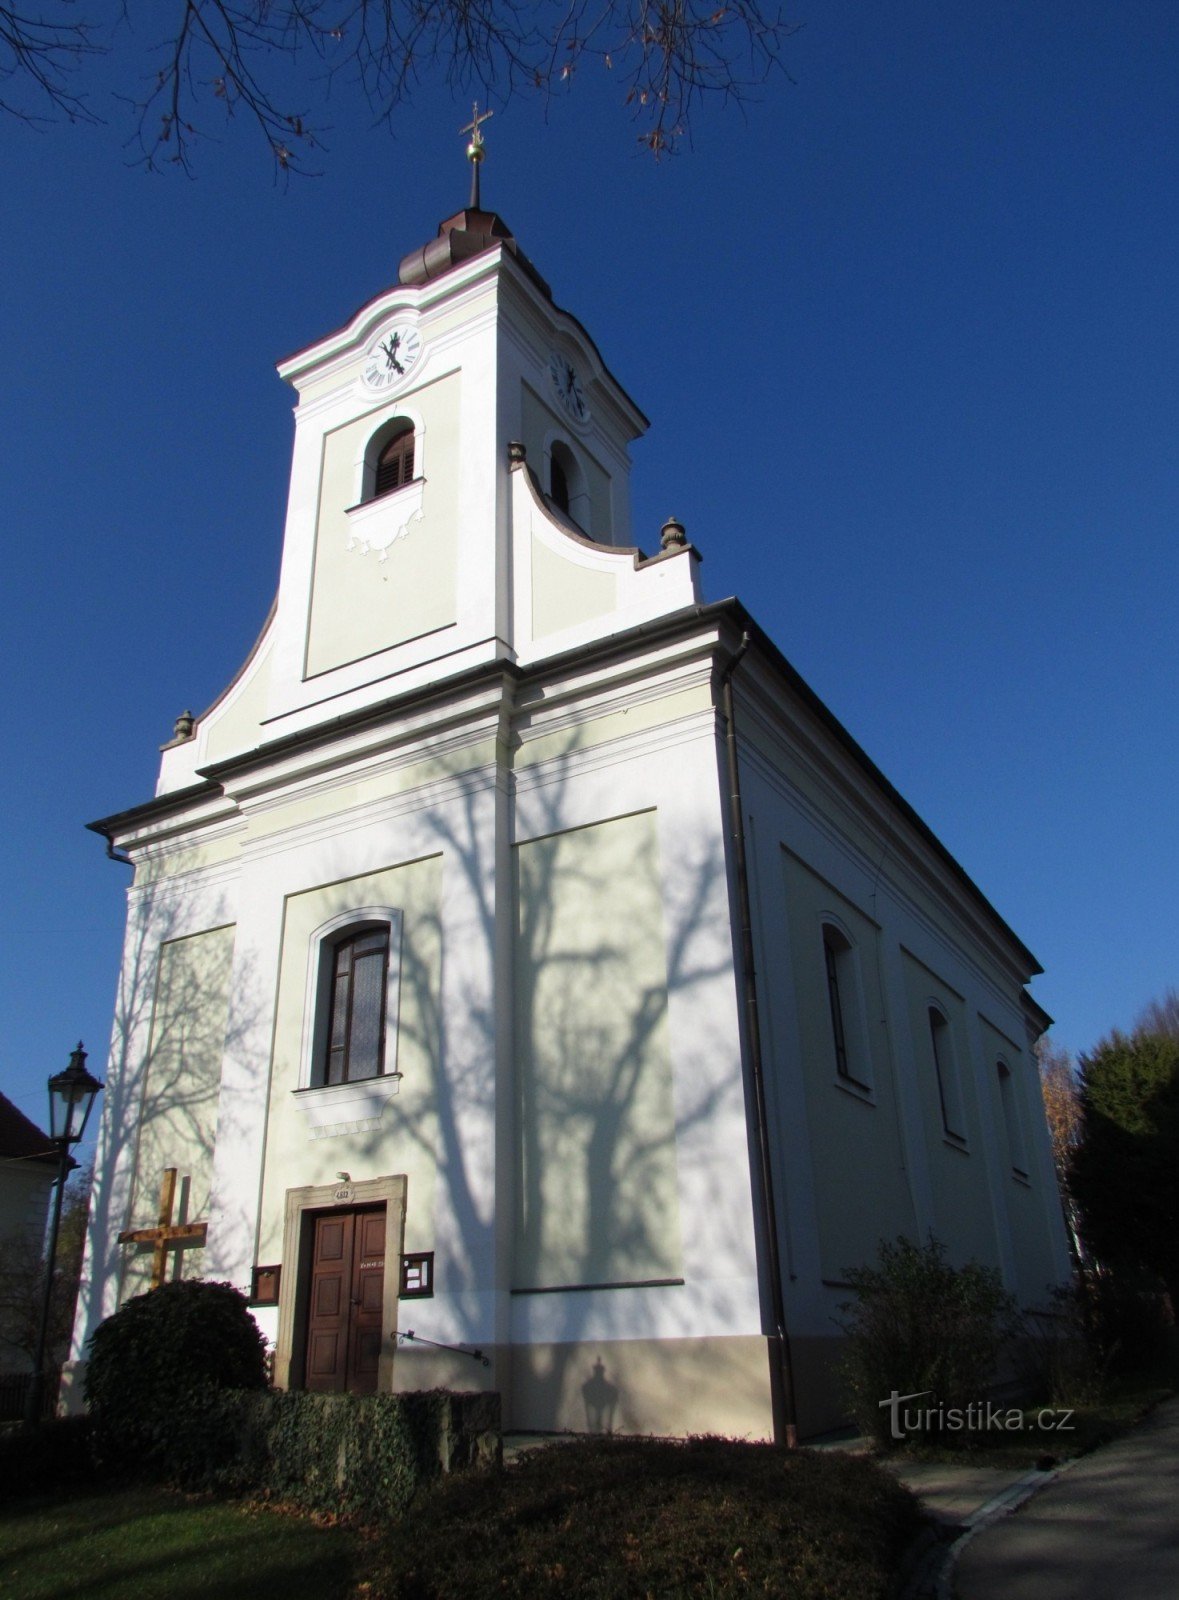 Εκκλησία του Αγίου Ιωσήφ και πρυτανείο στο Λούκοφ